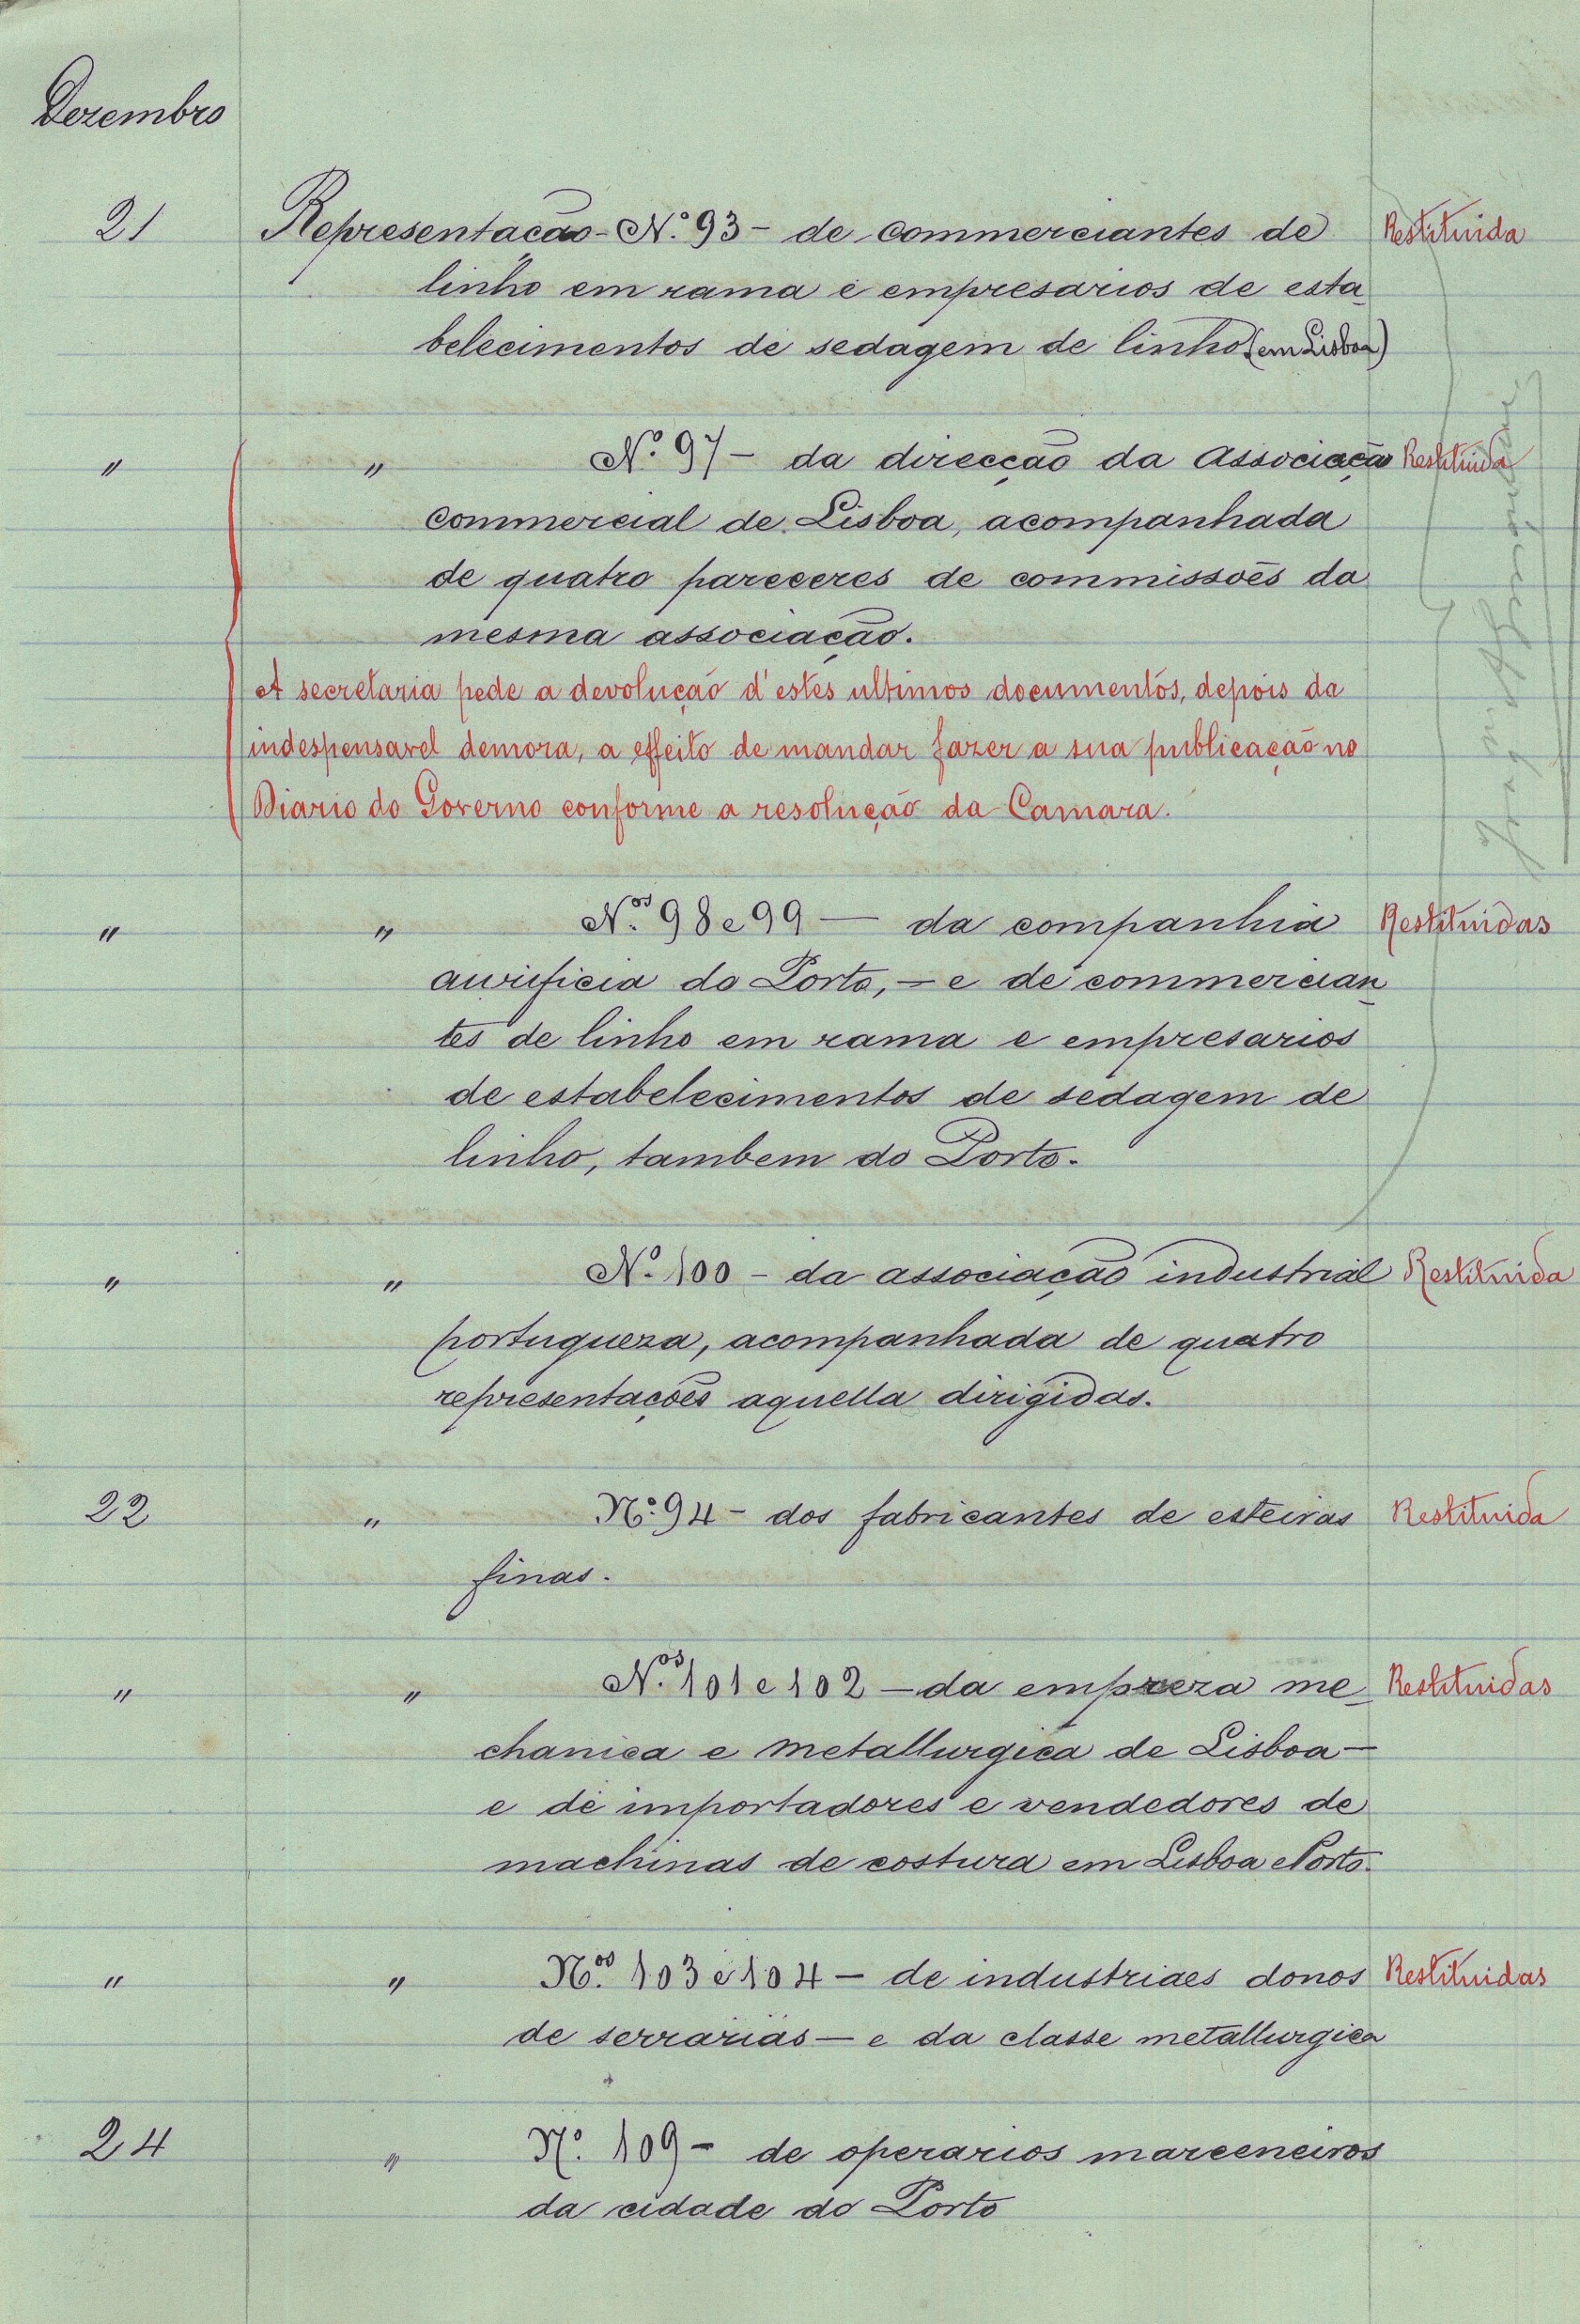 Relação de documentos entrados em 1891-1892 na Comissão. Cota AHP: Secção I/II, cx. 656, mç. 583, doc. 27